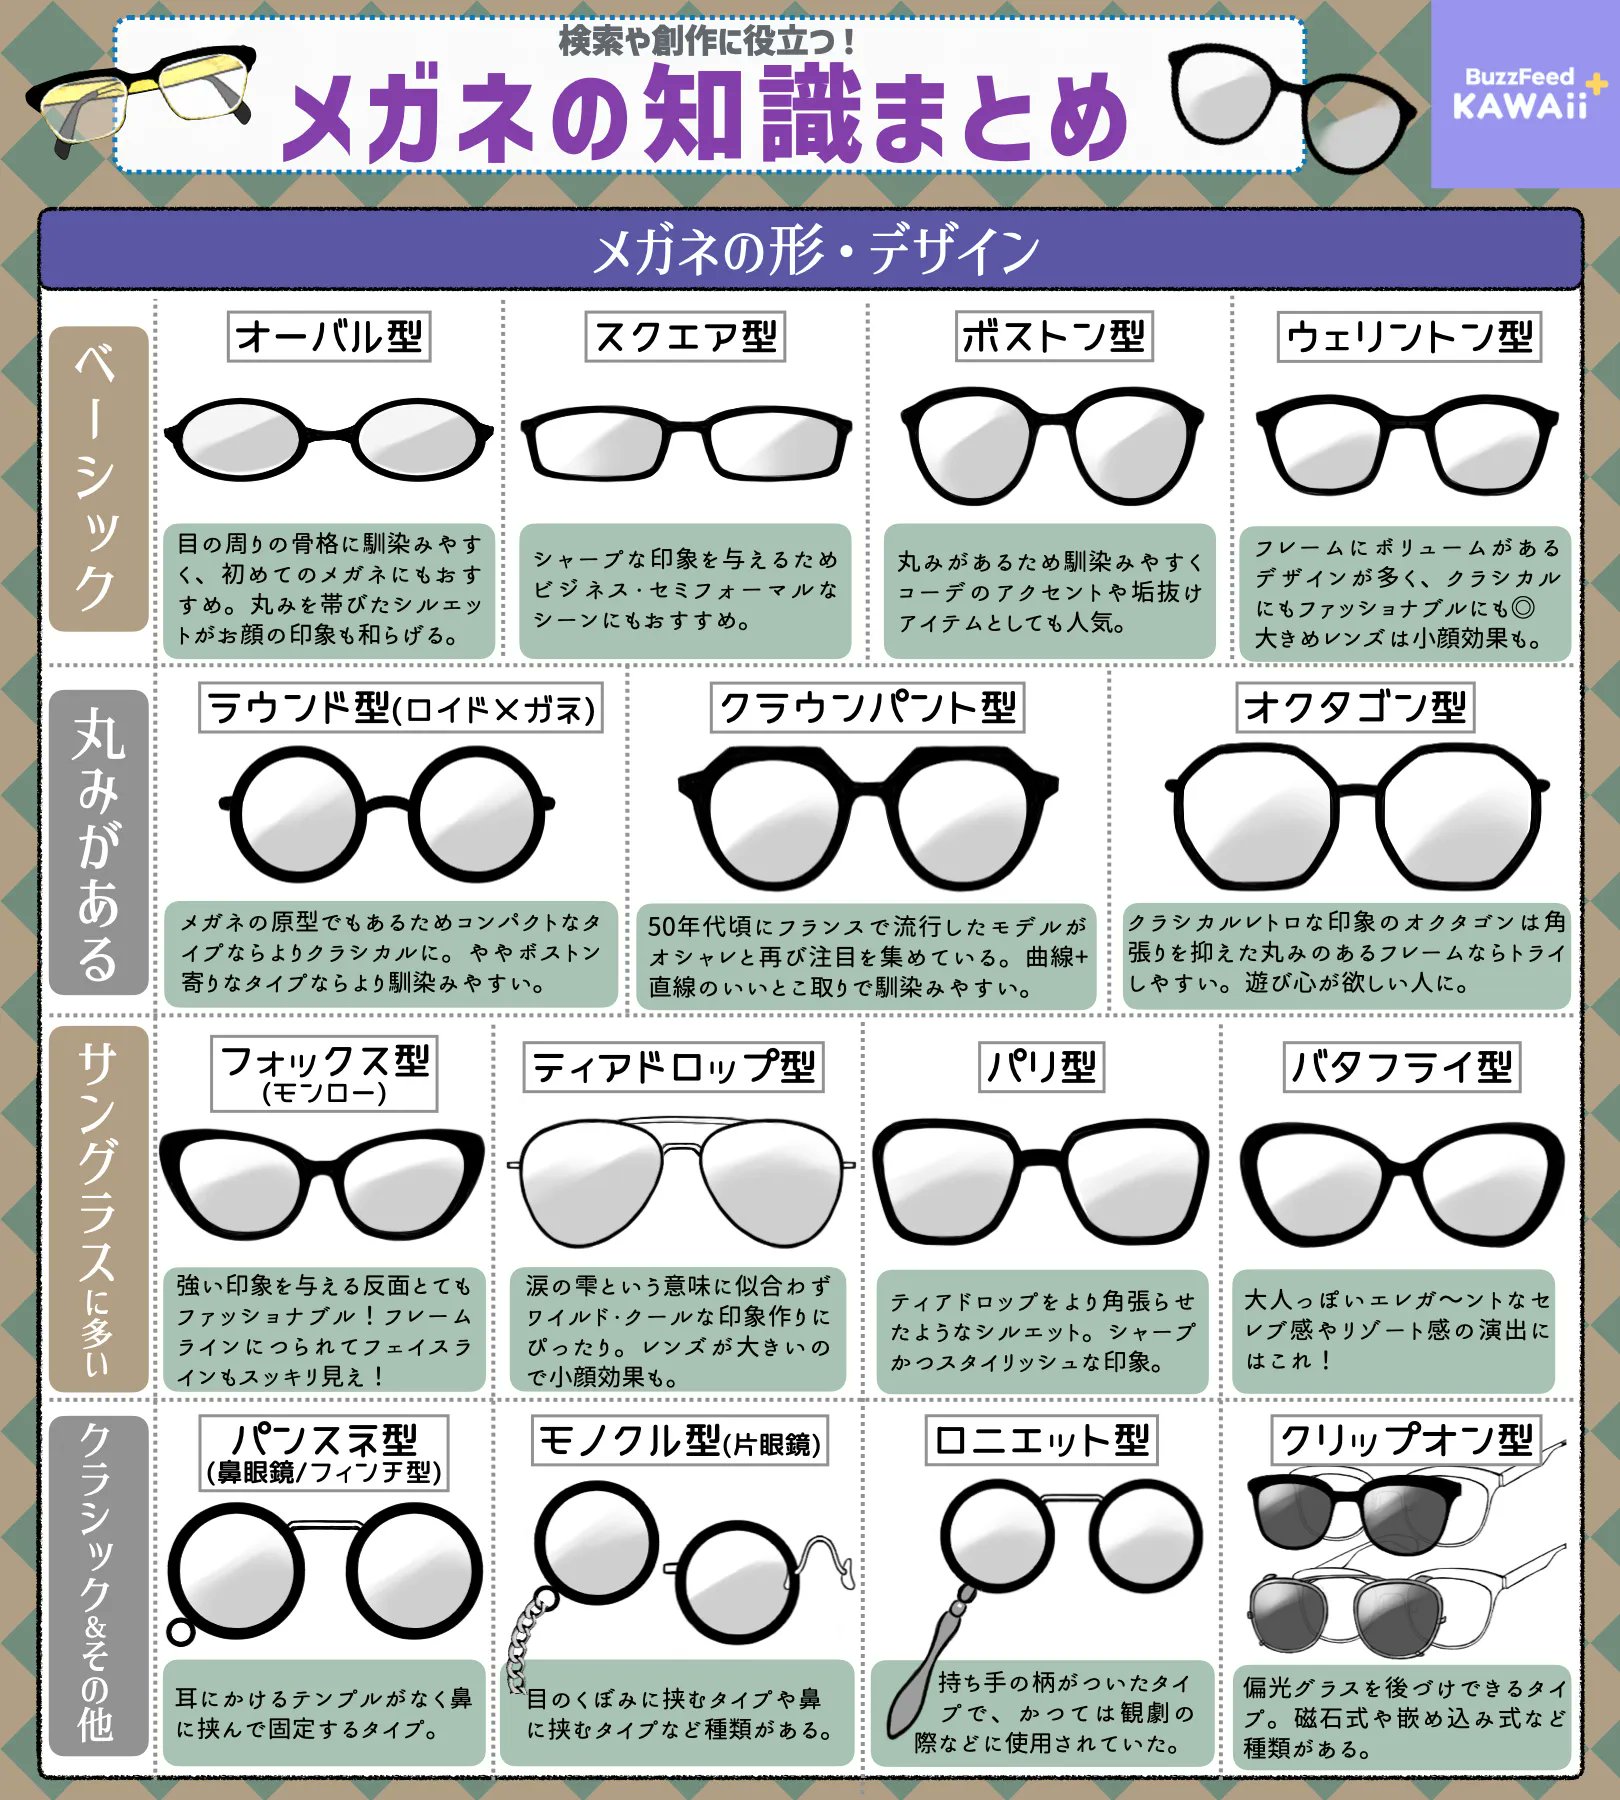 形やデザインにこんなにもいろんな種類があるなんて知らなかった!「メガネ」のいろいろな知識のまとめ!